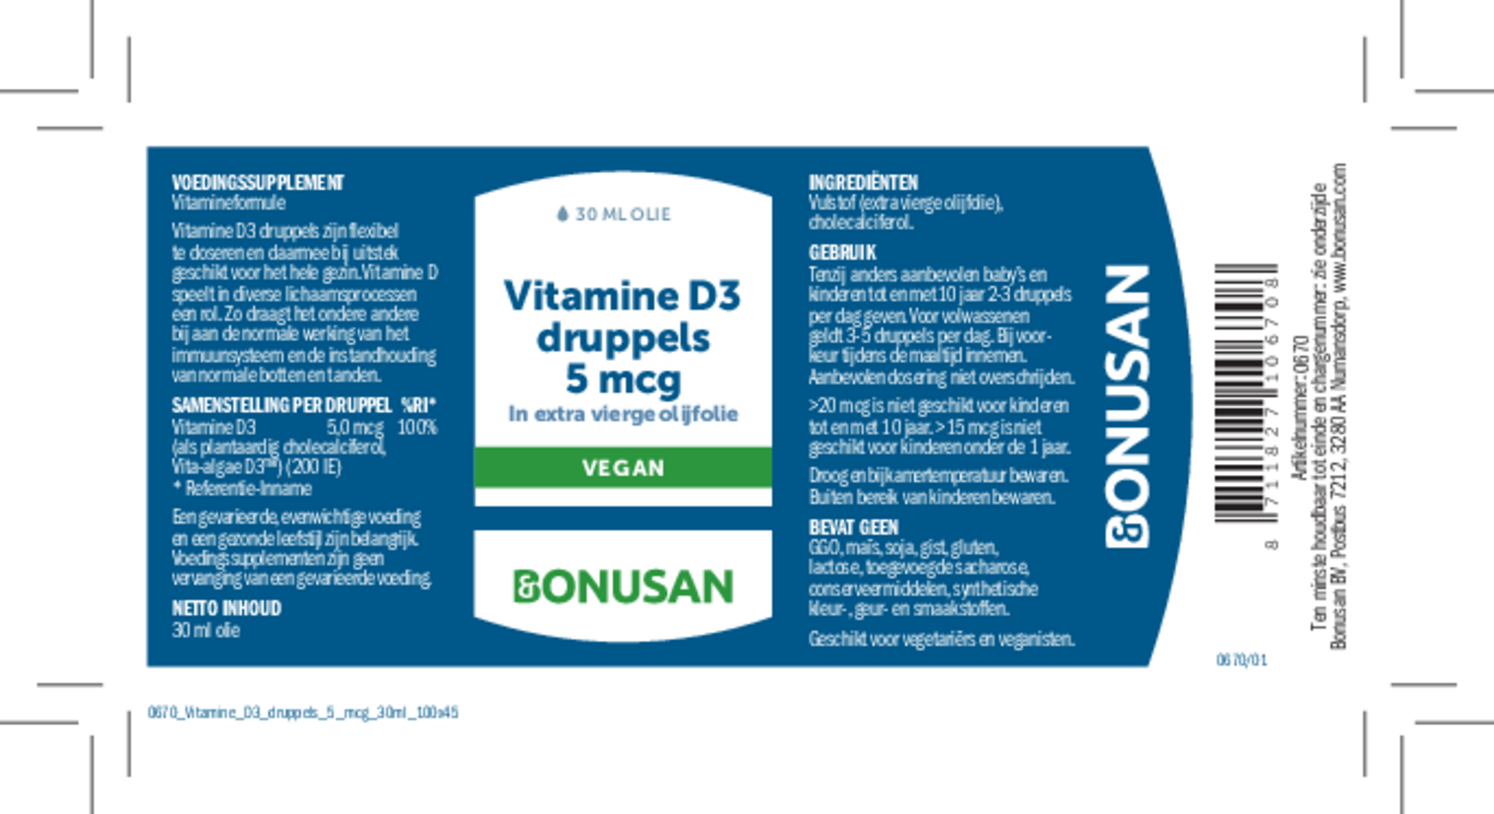 Vitamine D3 5 mcg Druppels afbeelding van document #1, etiket